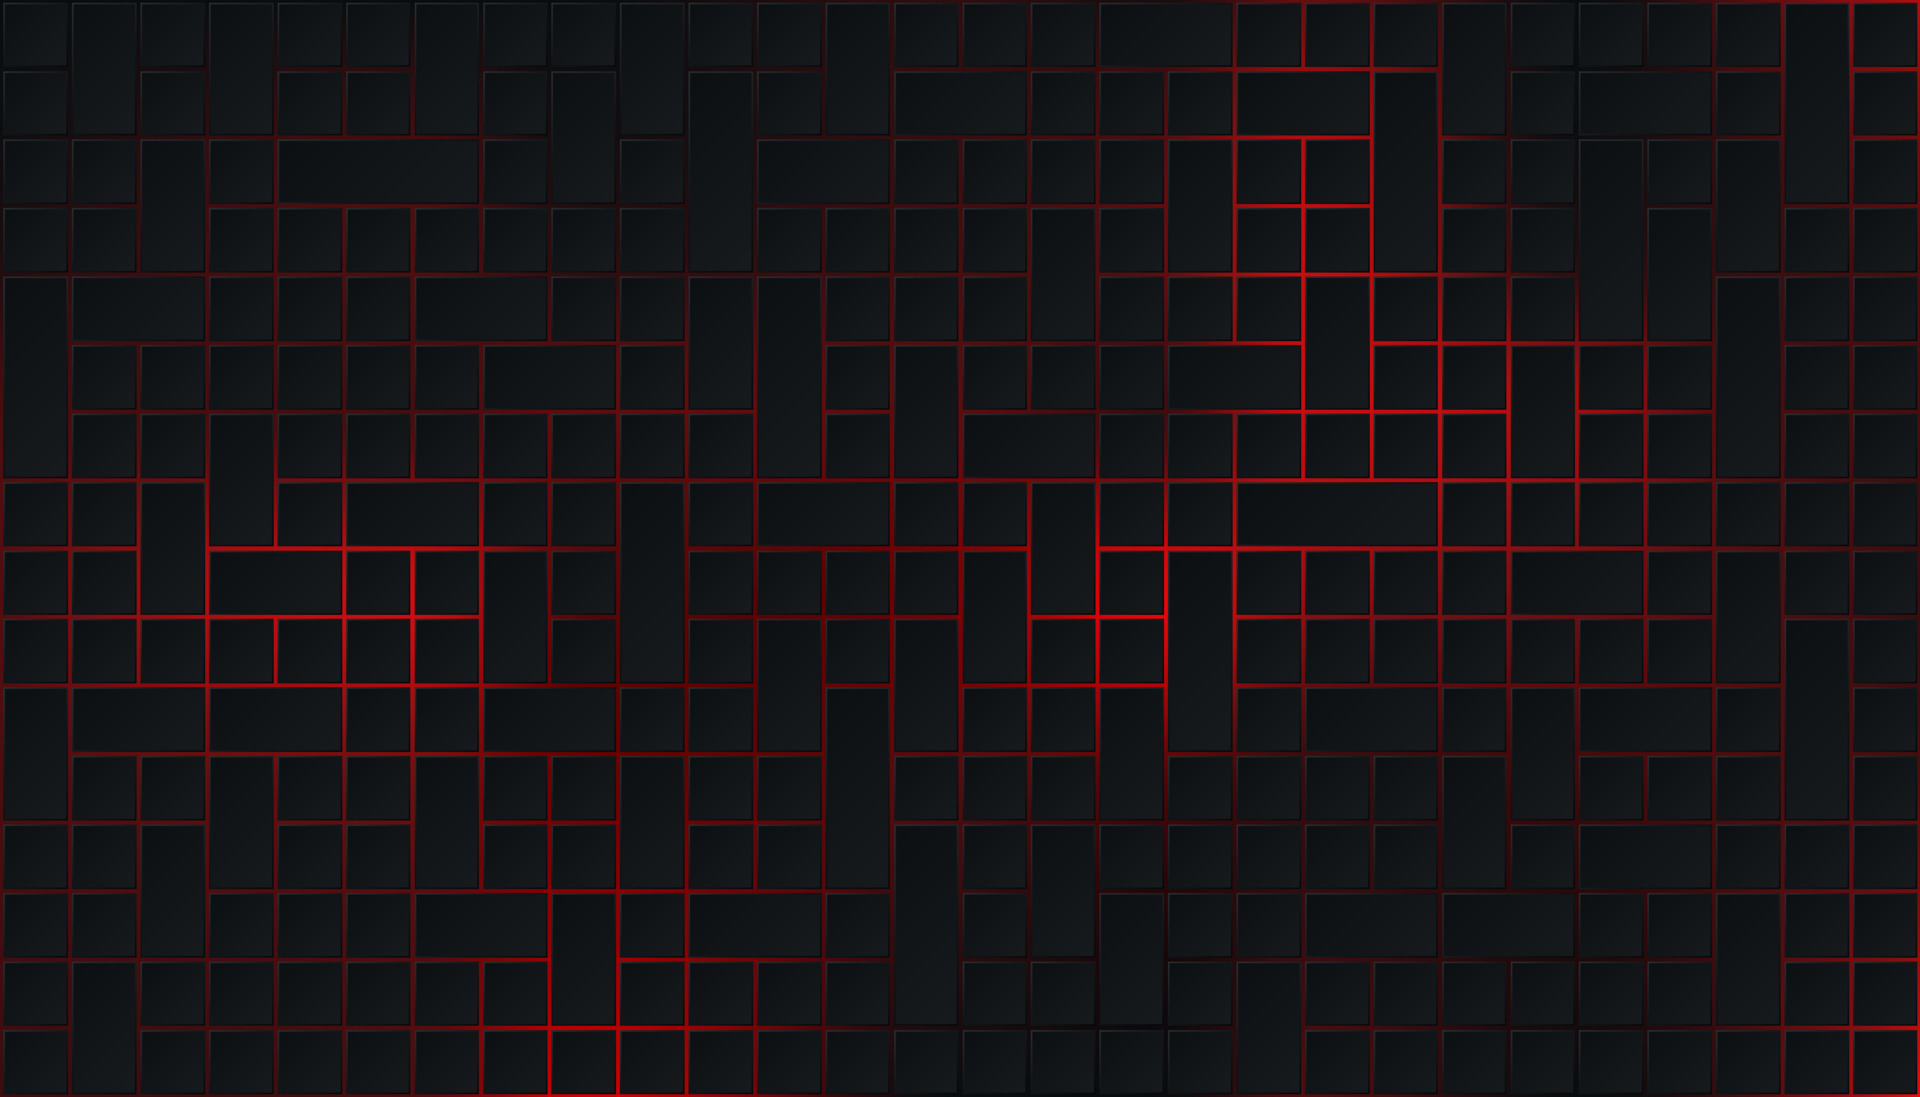 Cảm nhận sự kết hợp huyền bí giữa họa tiết ô vuông đen trên nền đỏ neon ánh sáng rực rỡ, tạo nên chiếc hình nền Black square pattern on glowing red neon background độc đáo và cuốn hút. Bấm vào để khám phá thông điệp mạnh mẽ đằng sau hình ảnh này.